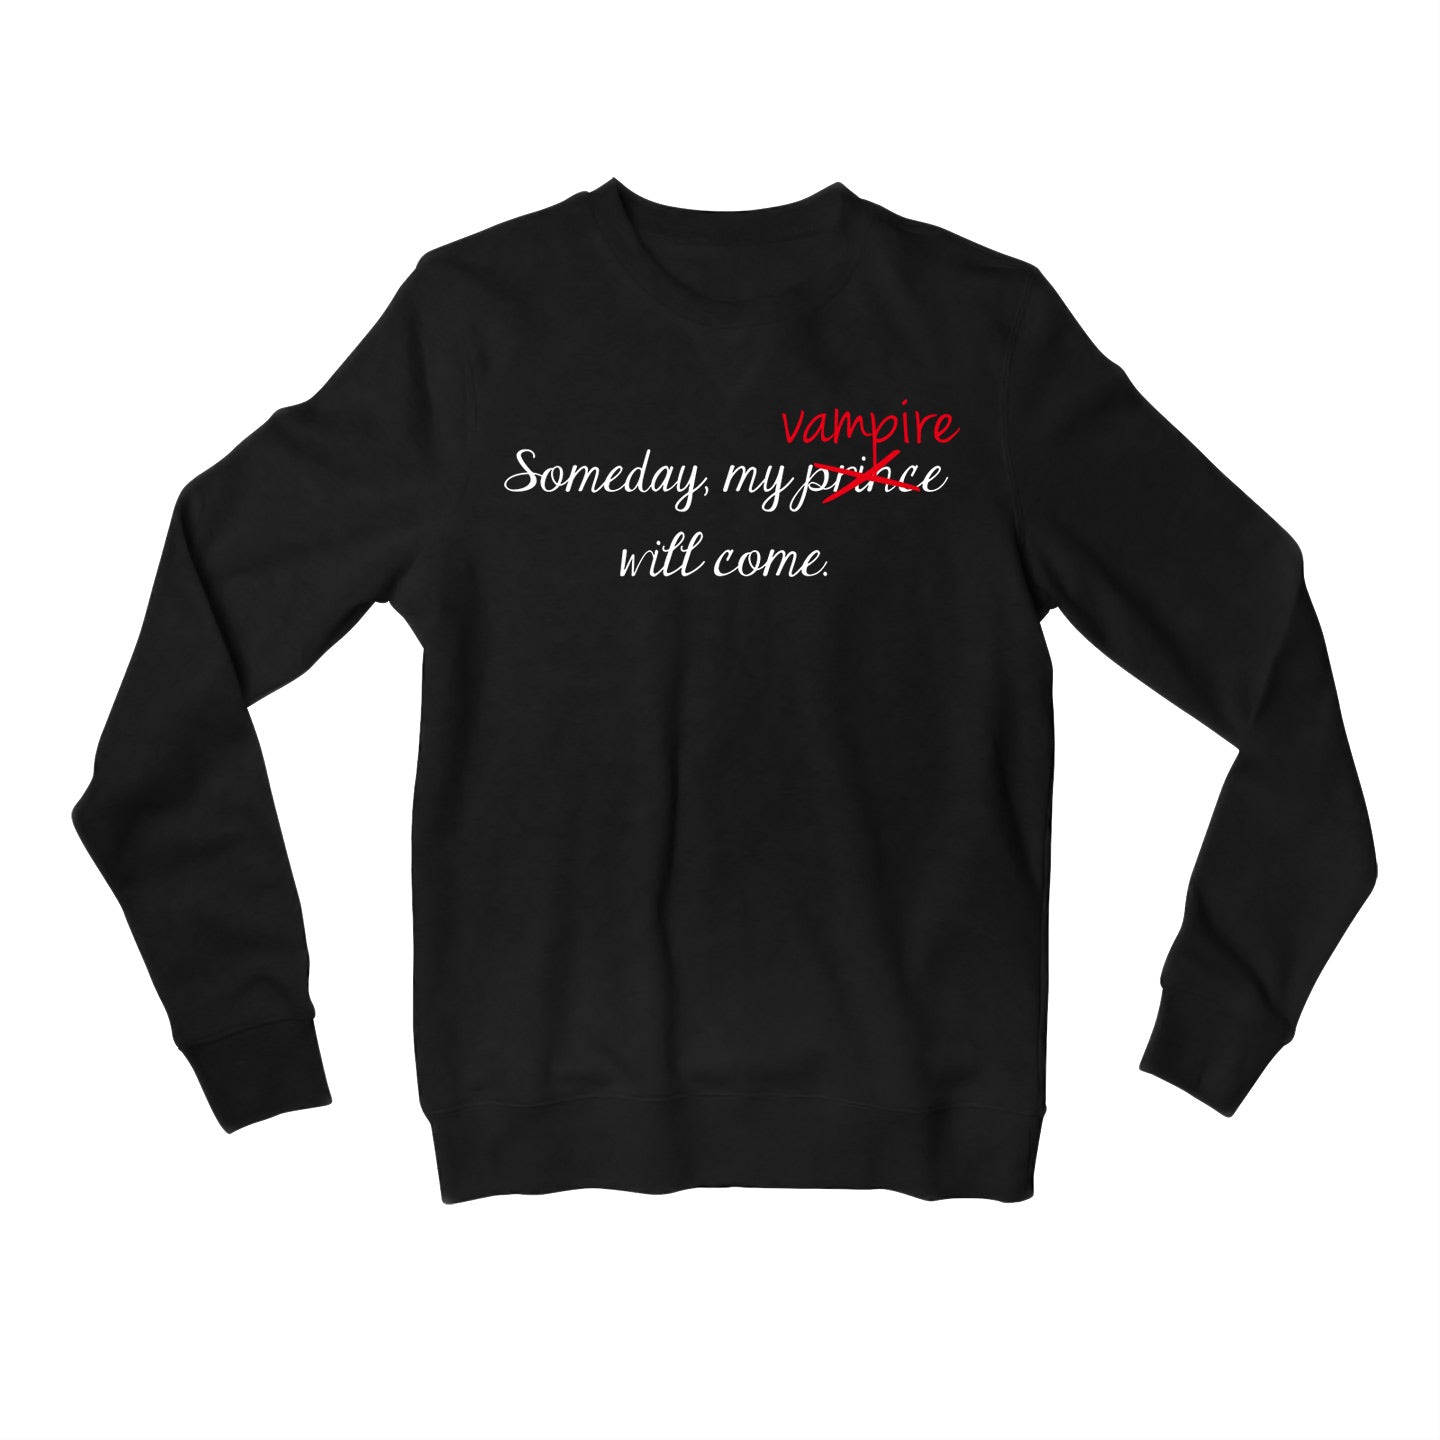 The Vampire Diaries Sweatshirt - My Vampire Will Come Sweatshirt The Banyan Tee TBT